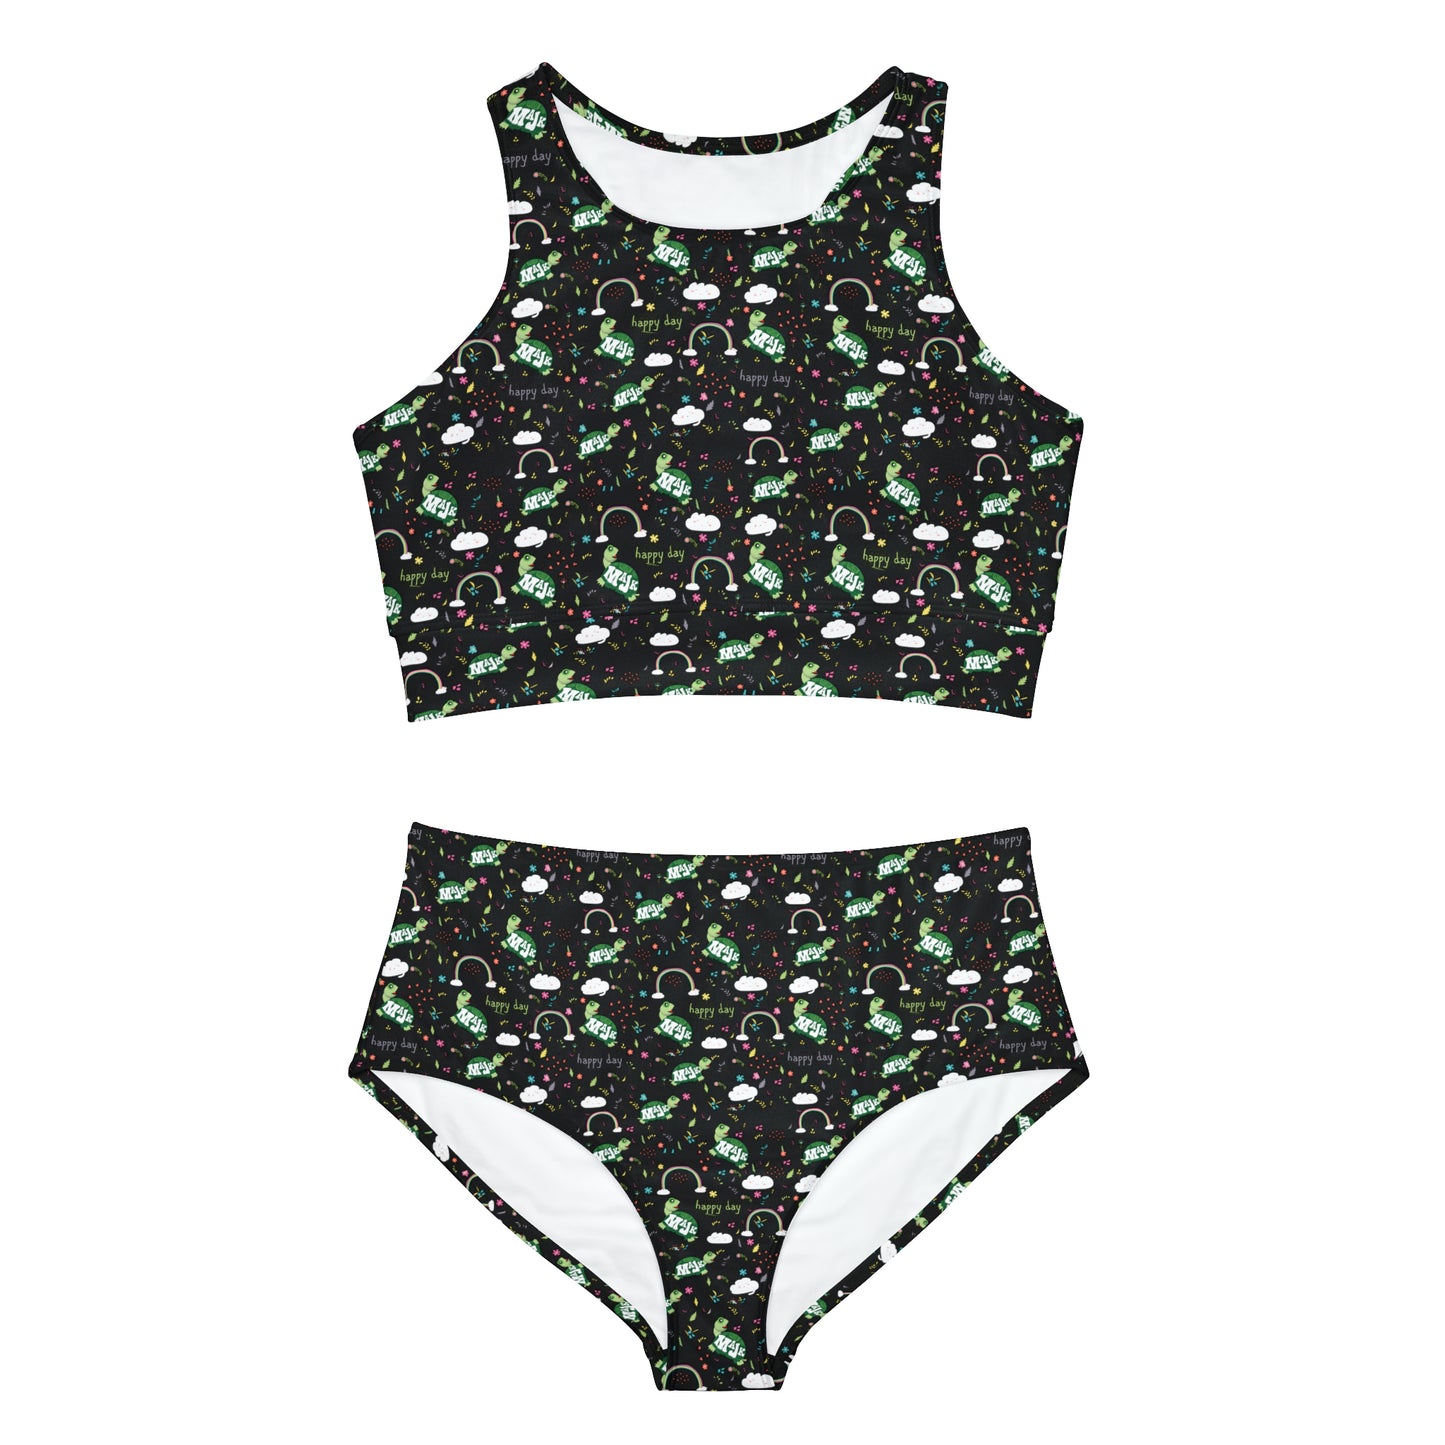 Youth/ Women's Sporty 2 piece Bikini swim suit "Happy Days"